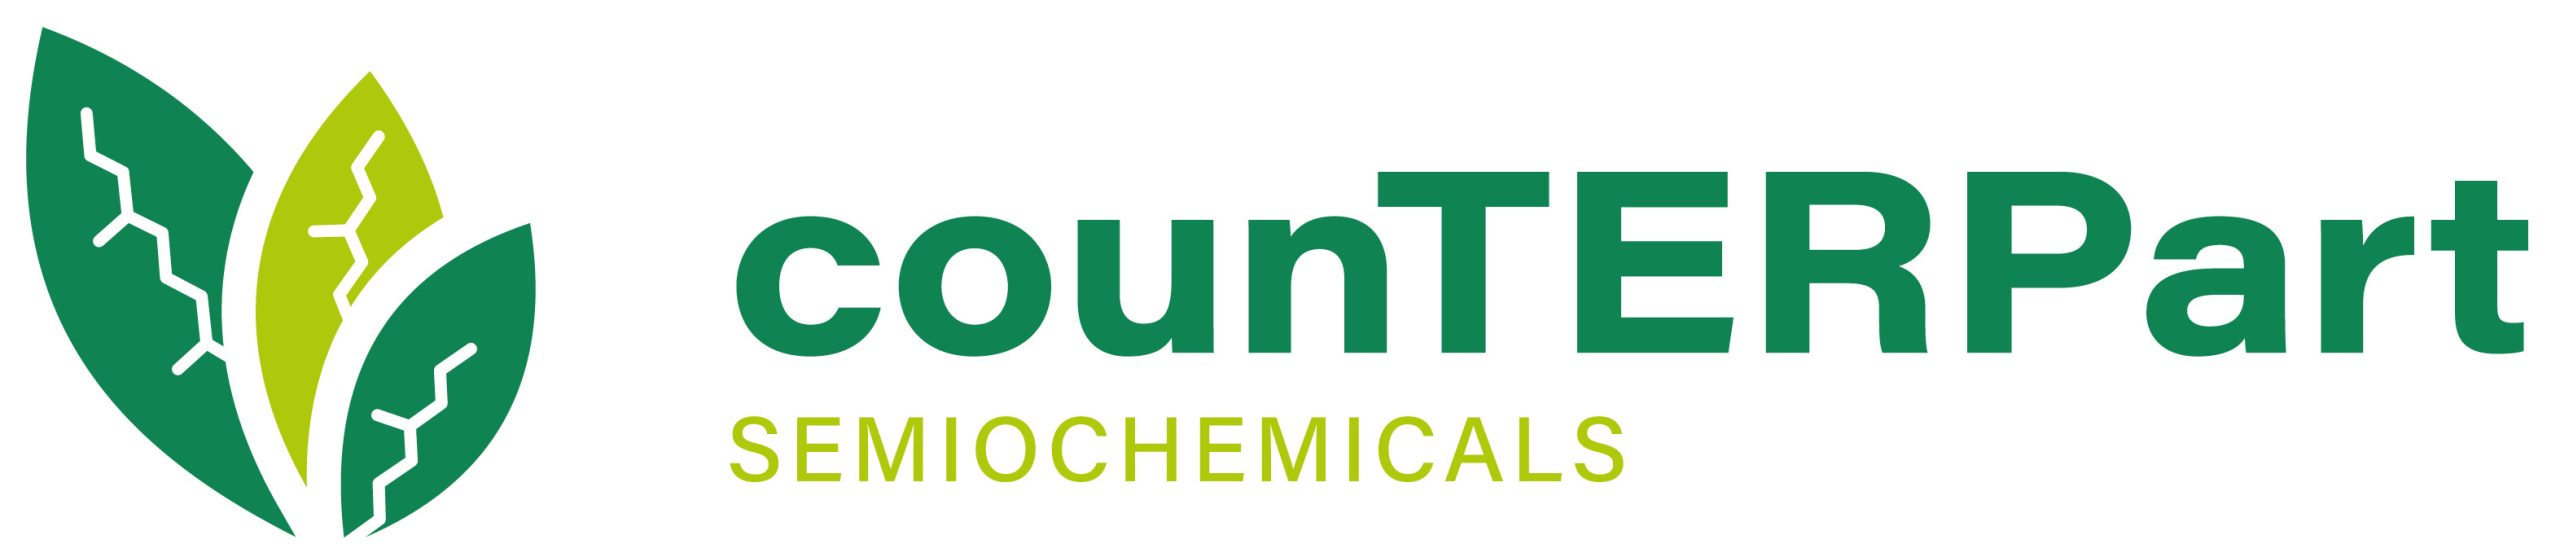 CounTERPart Semiochemicals